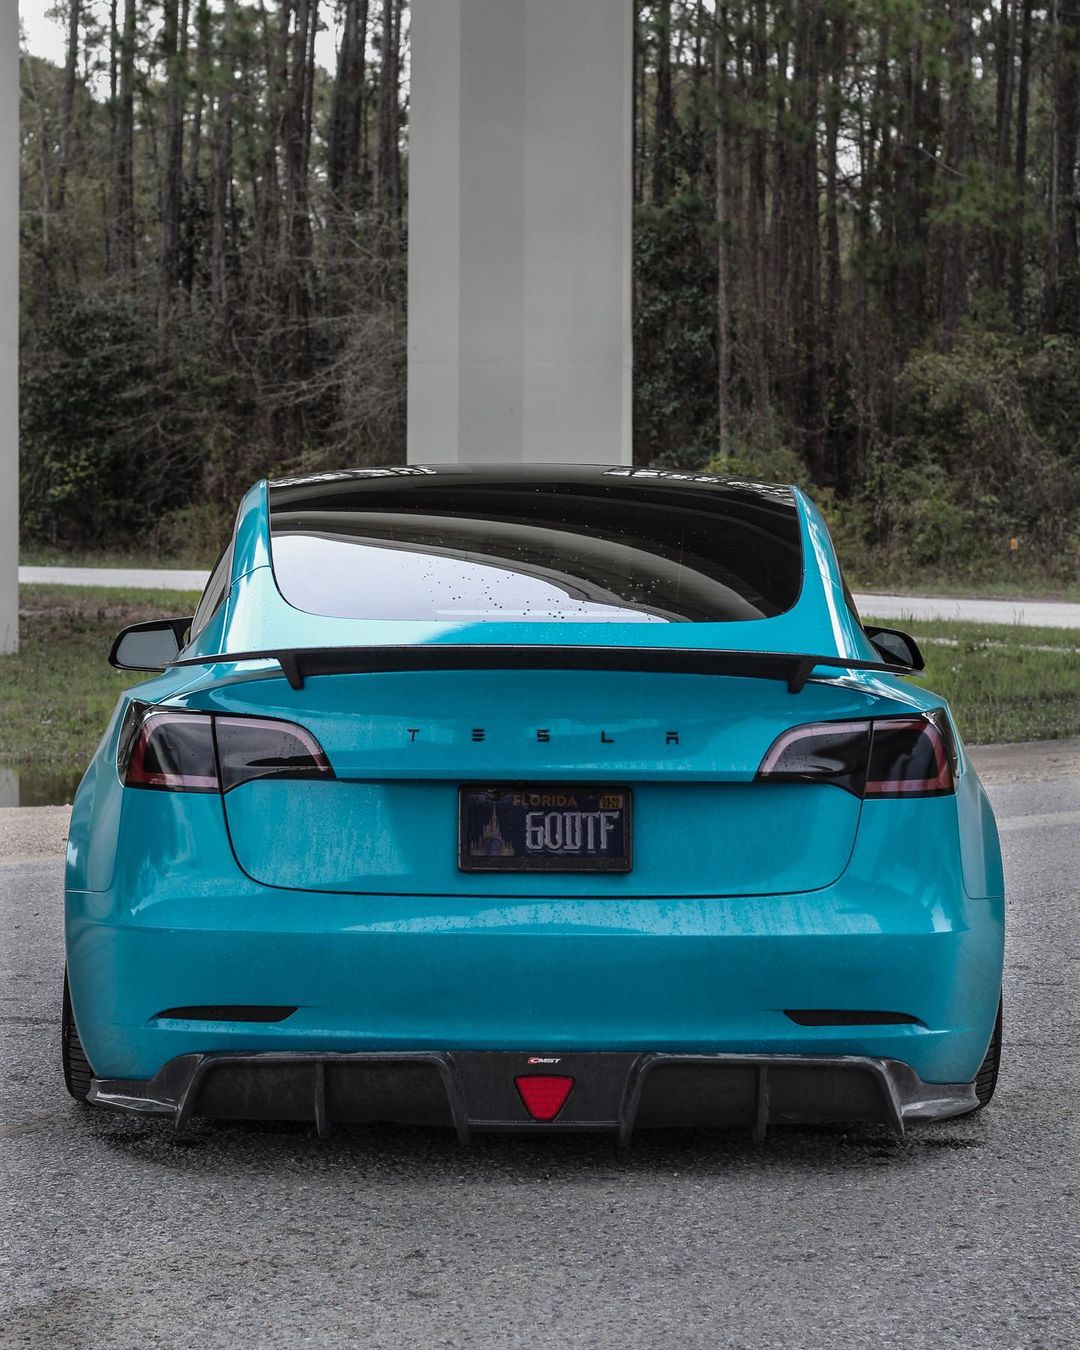 TESERY×CMST Tesla Model 3 Carbon Fiber Rear Spoiler Ver.3 - Tesery Official Store